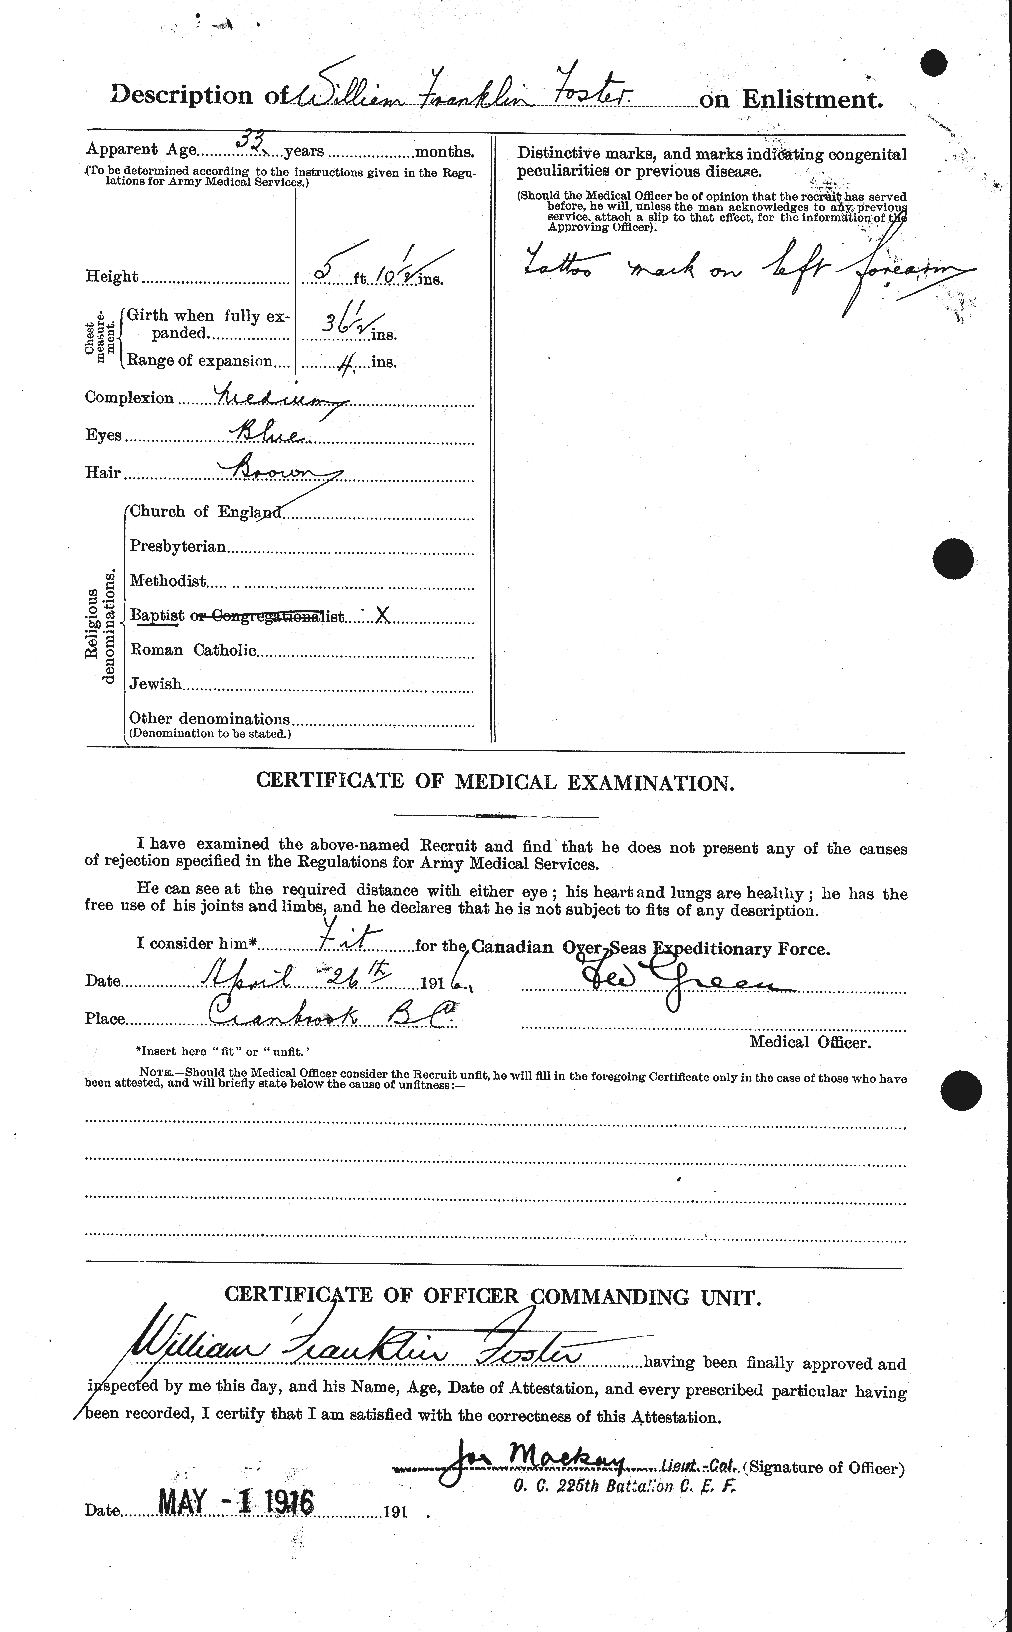 Dossiers du Personnel de la Première Guerre mondiale - CEC 328742b